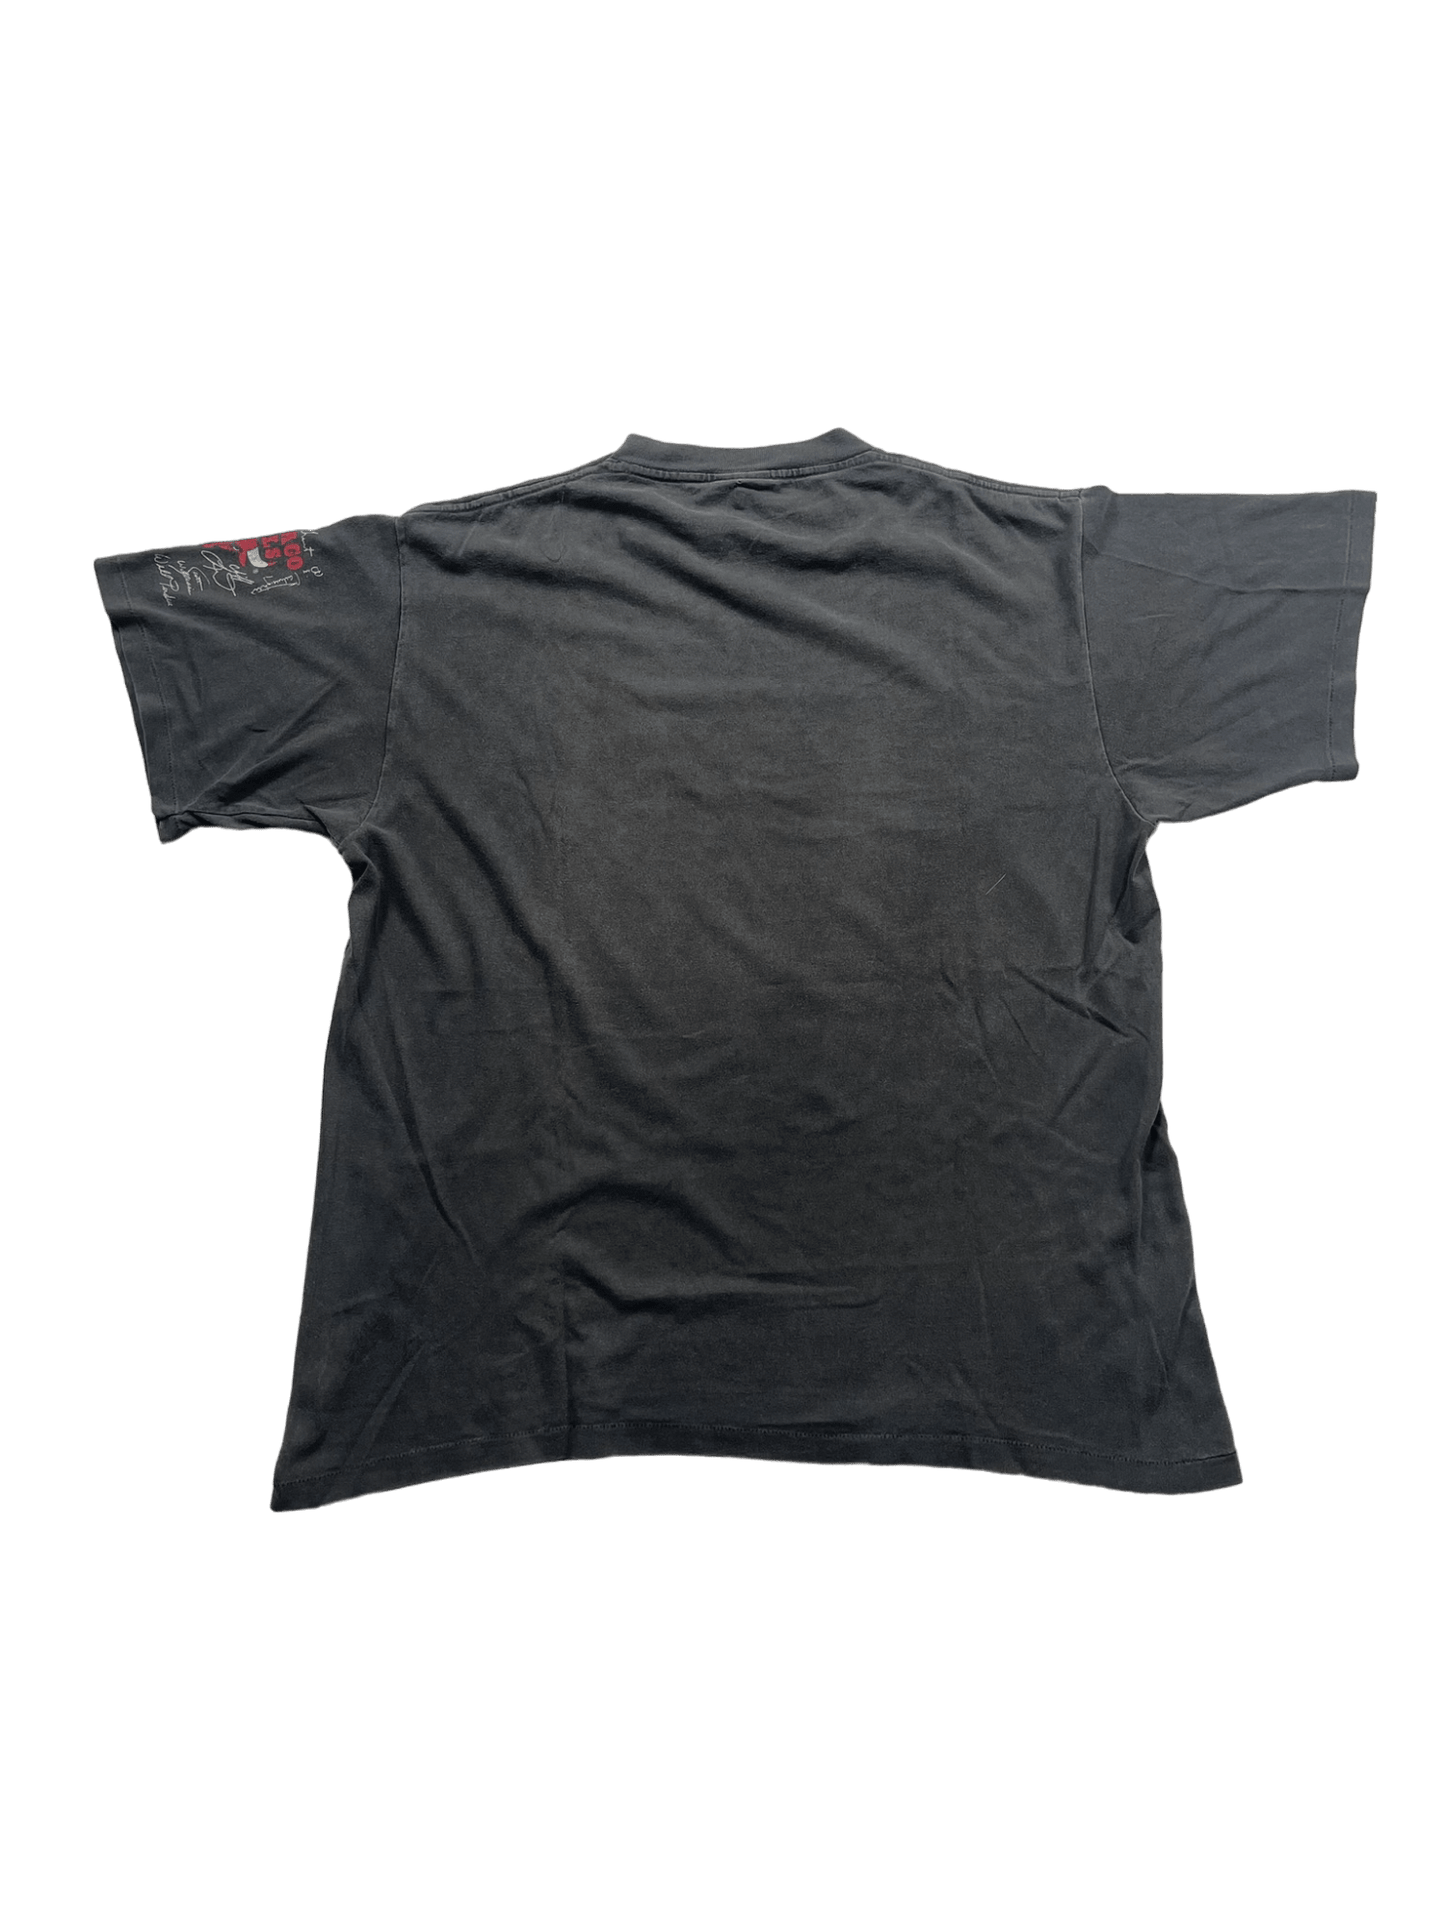 The Vintage Racks T-Shirt Chicago Bulls Shattered Backboard - XL